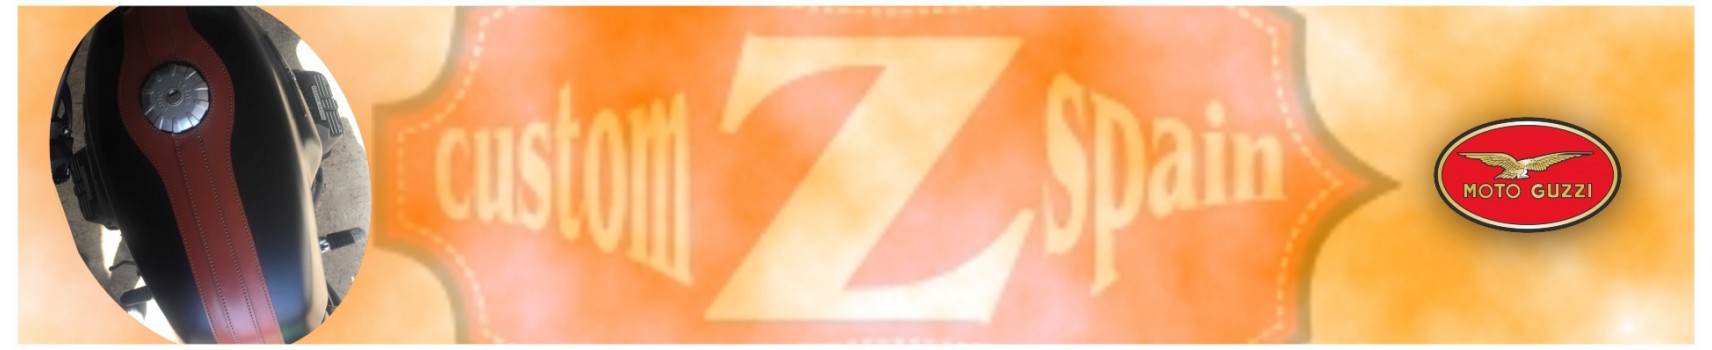 Corbatas Moto Guzzi de cuero para el depósito